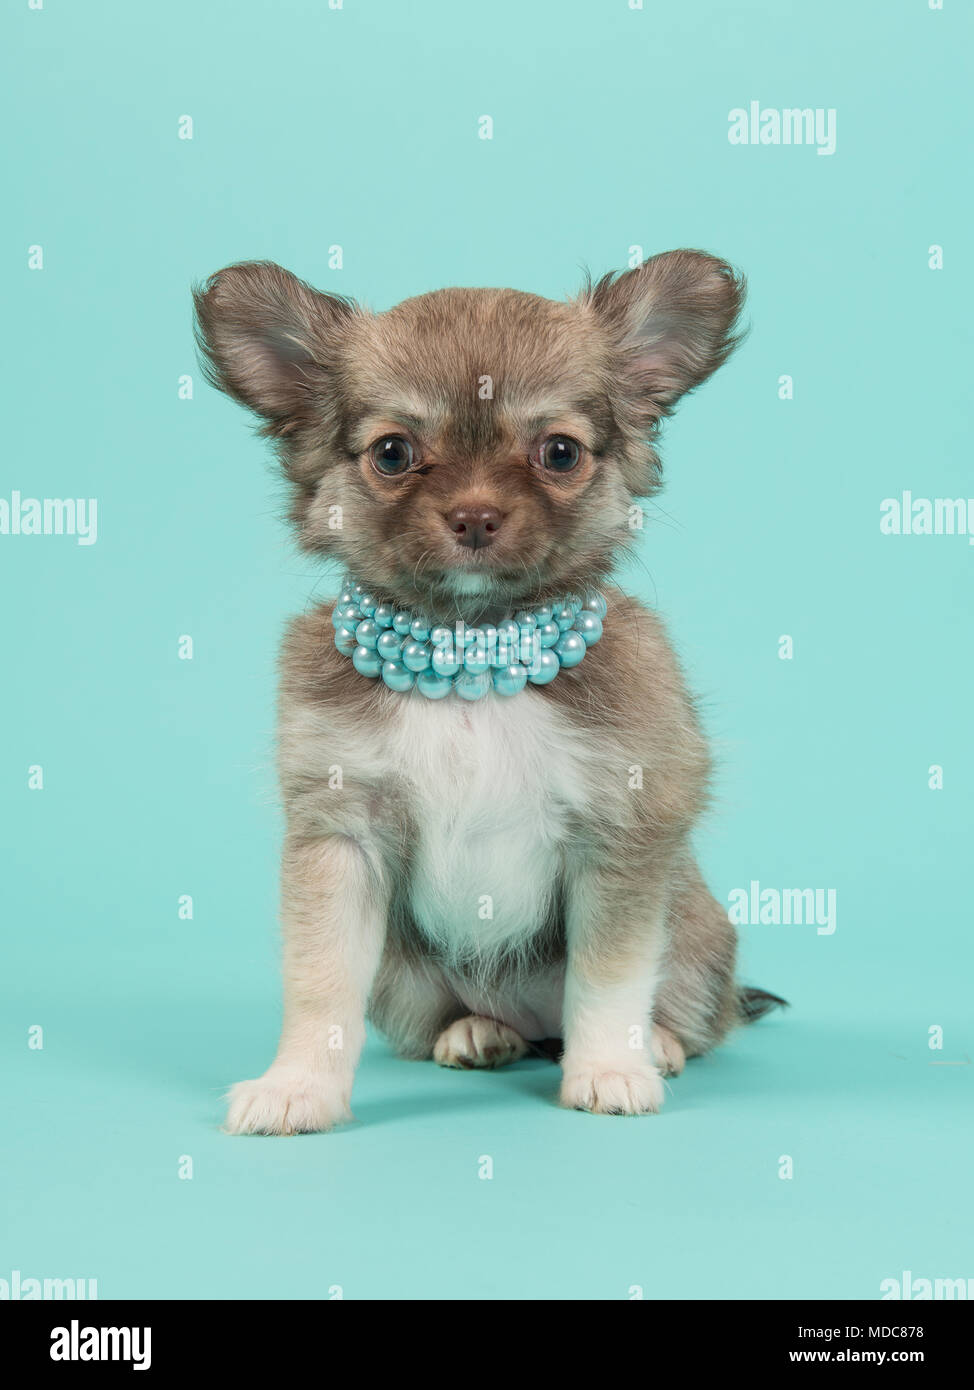 Chihuahua chiot mignon regardant la caméra portant un collier de perles bleu assis sur un fond bleu turquoise Banque D'Images